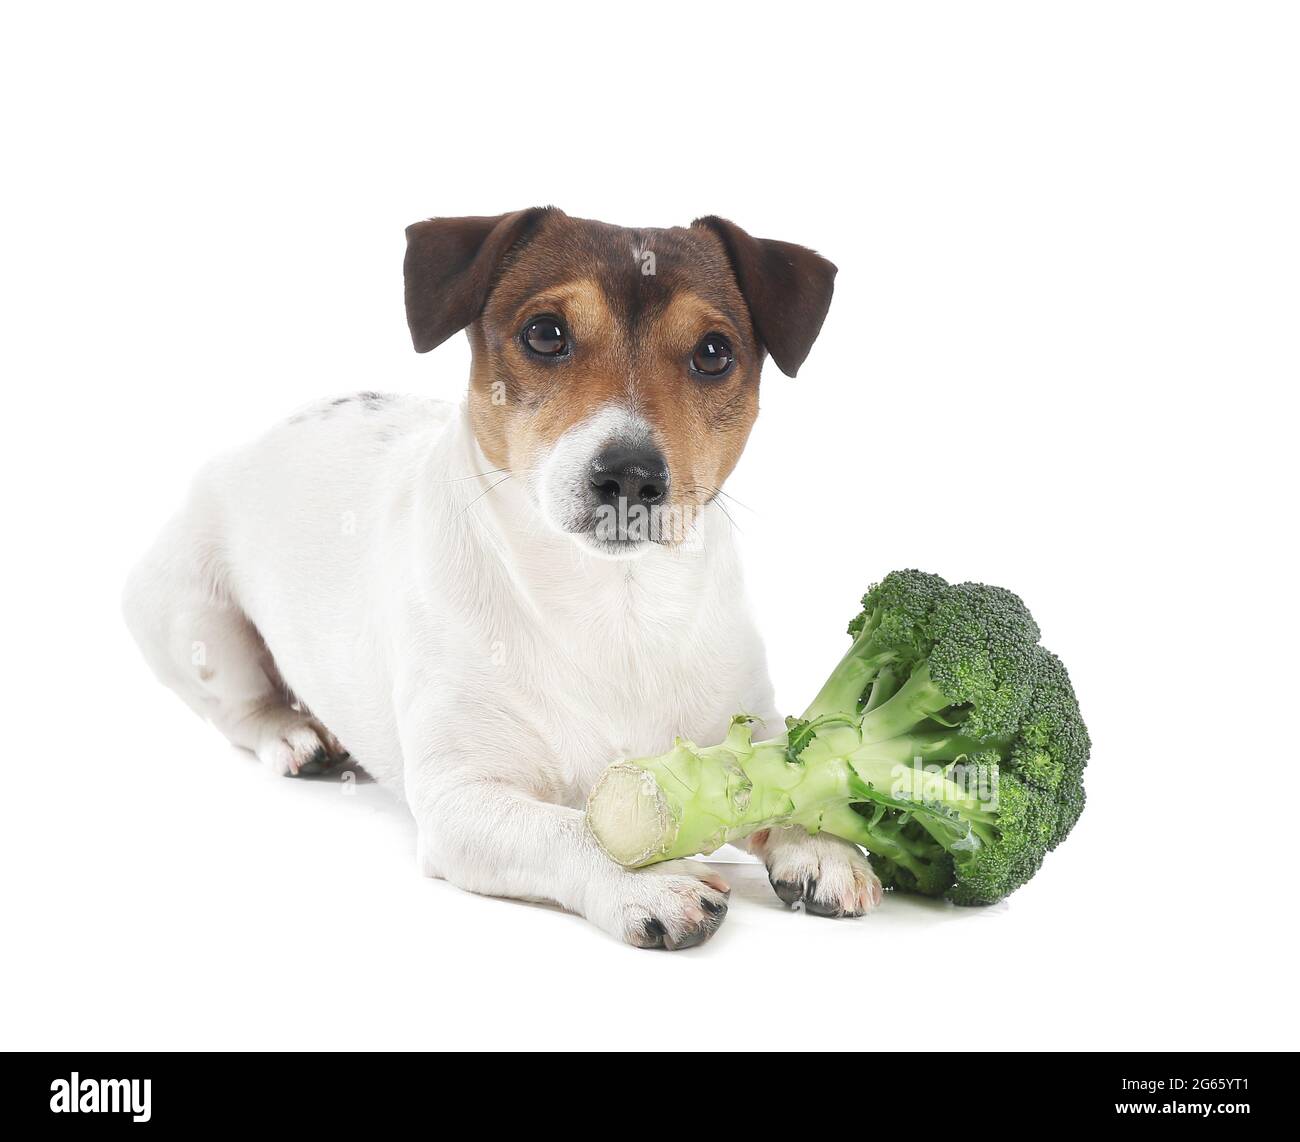 Netter Hund mit Brokkoli auf weißem Hintergrund Stockfotografie - Alamy